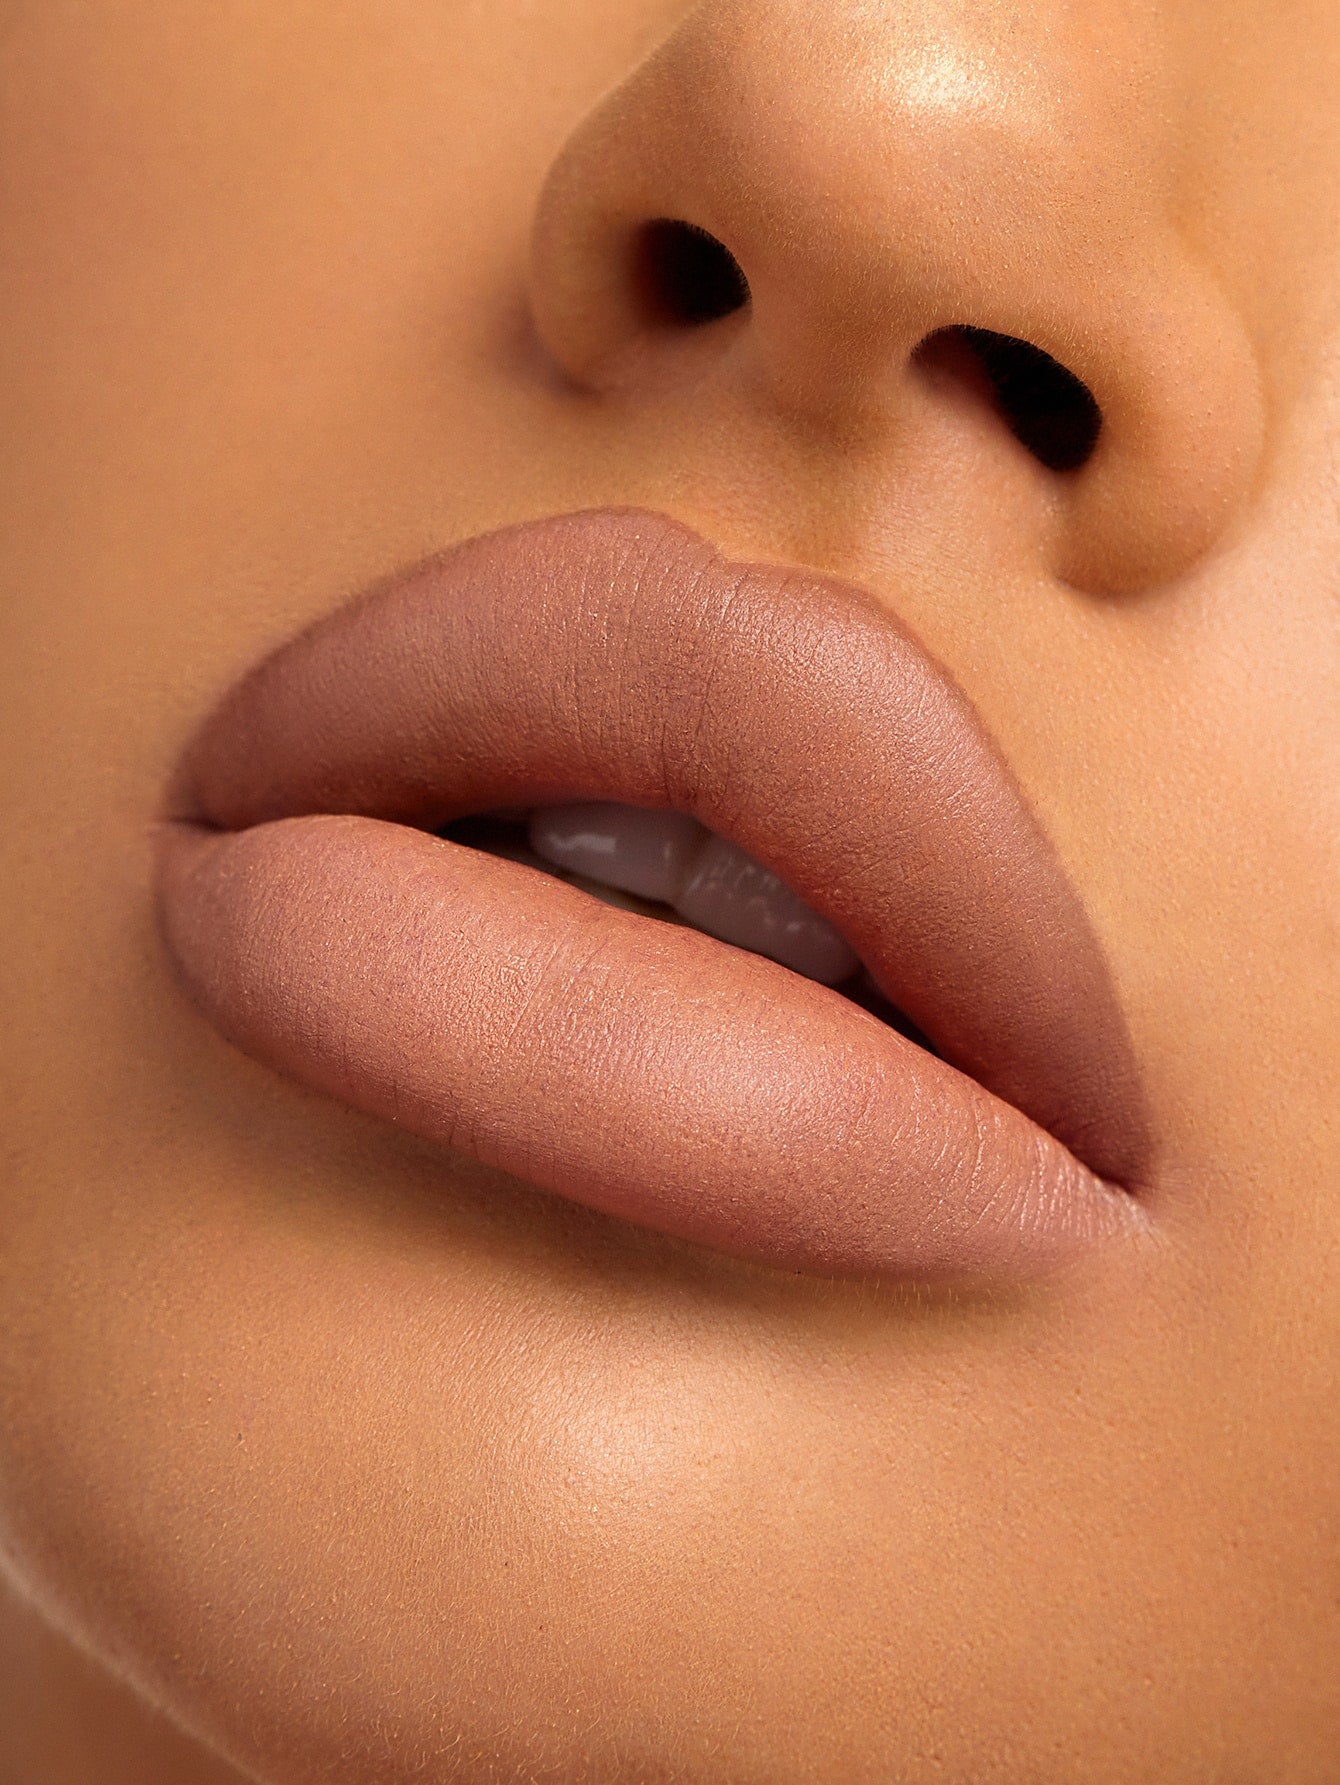 SHEGLAM Starlight Velvet Lipstick-Bold Berry 10 Colors Shimmer Matte Long Lasting Lipstick Nourishing Silky Smooth Lipstick